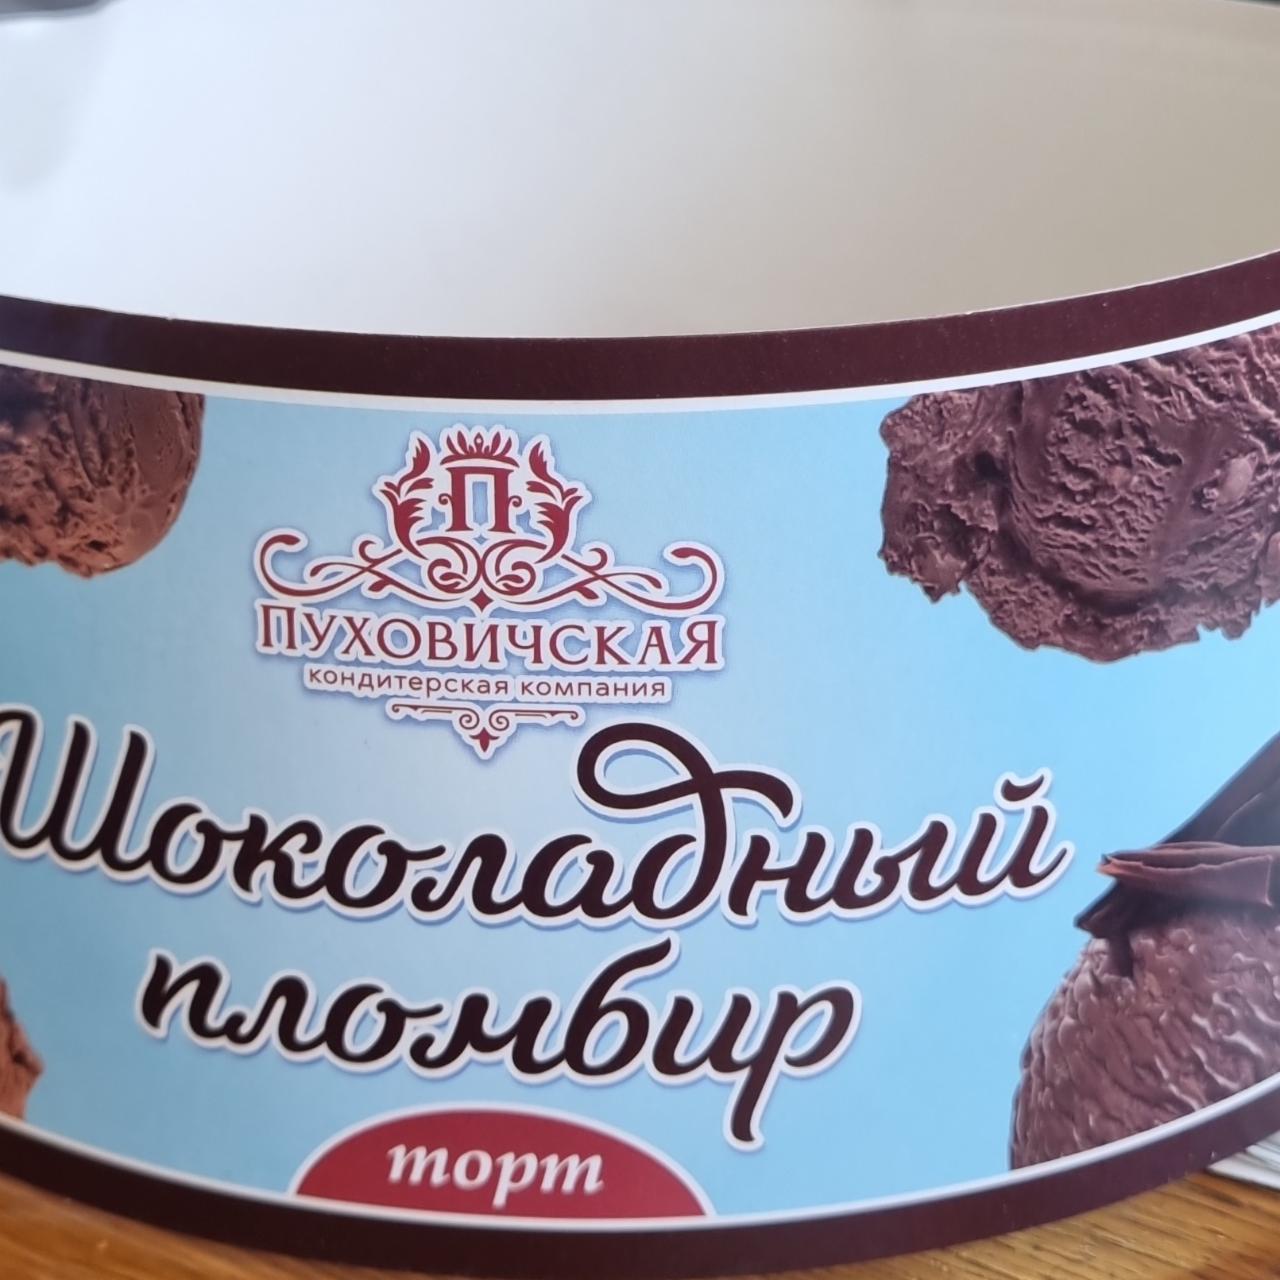 Фото - Торт шоколадный пломбир Пуховичская кондитерская фабрика